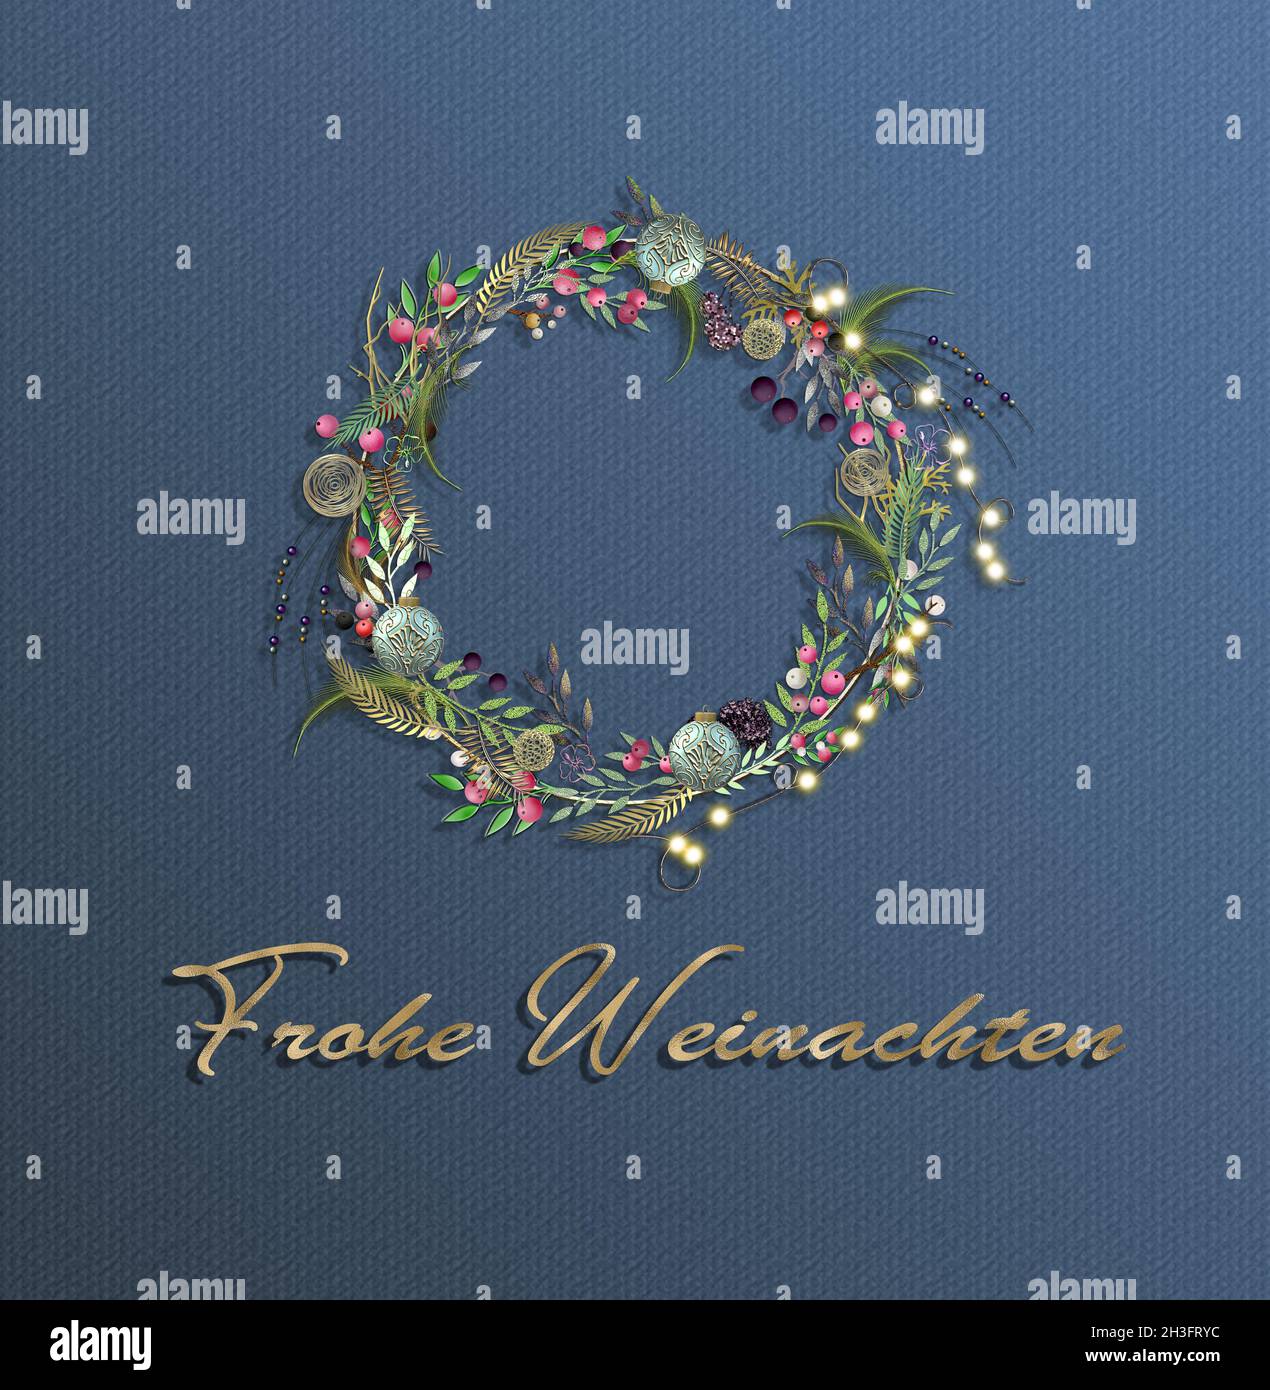 Testo Tedesco Frohe Weihnachten traduzione Inglese auguri di buon Natale in  lingua tedesca su sfondo blu scuro con corona floreale di Natale e  decorazione festiva, 3D illustrazione Foto stock - Alamy